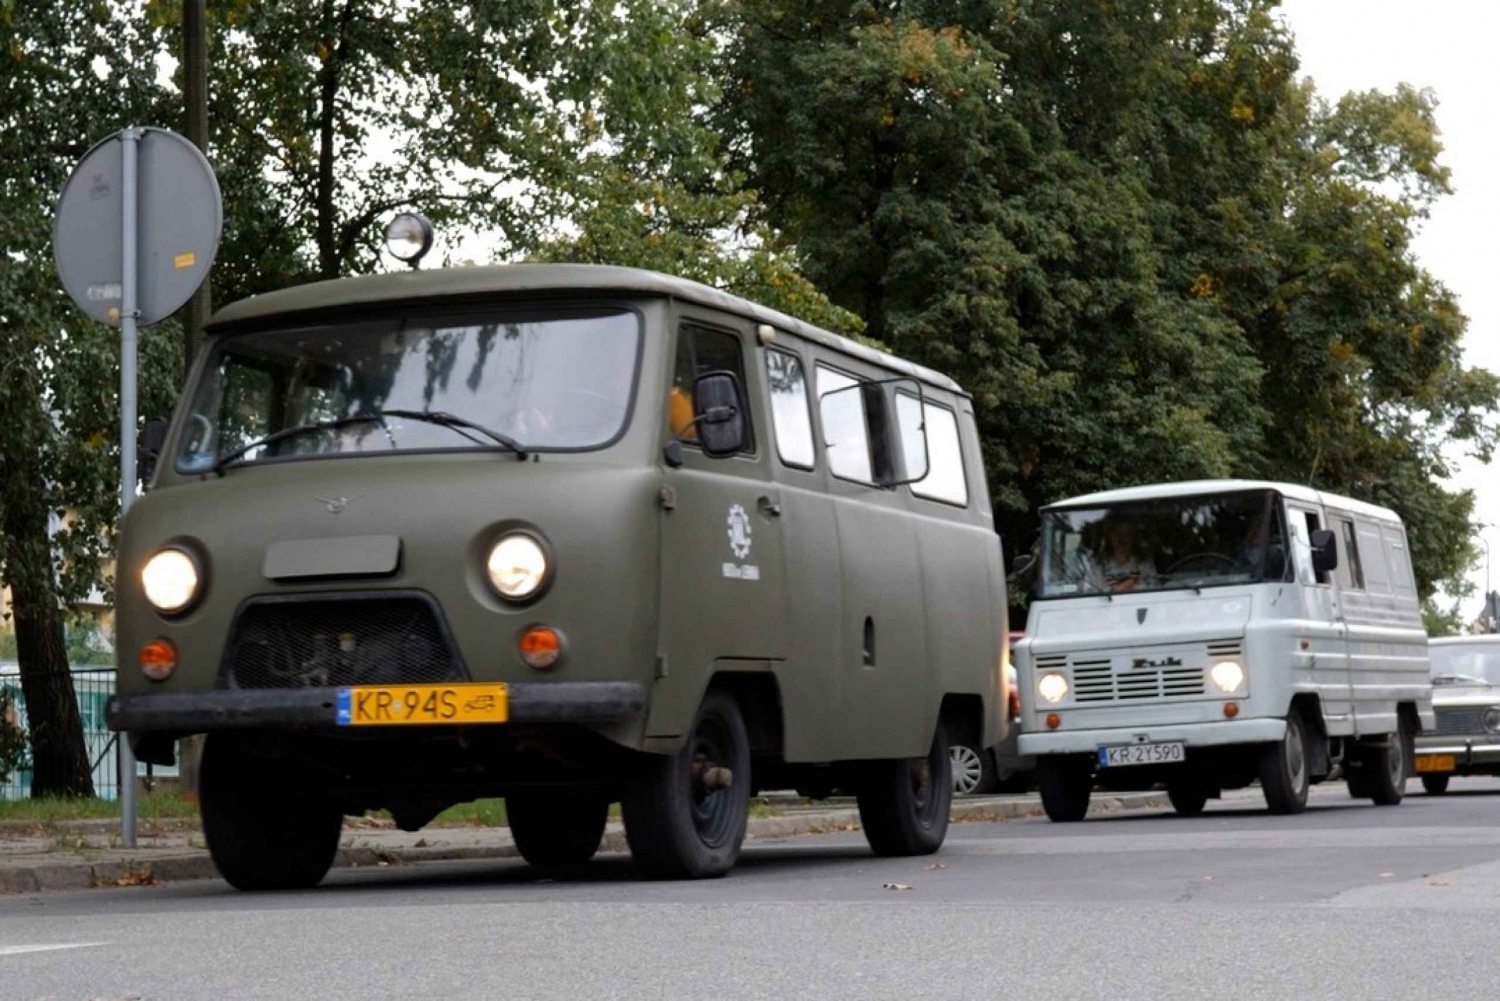 Cracóvia: visita guiada a Nowa Huta em carros da era comunista